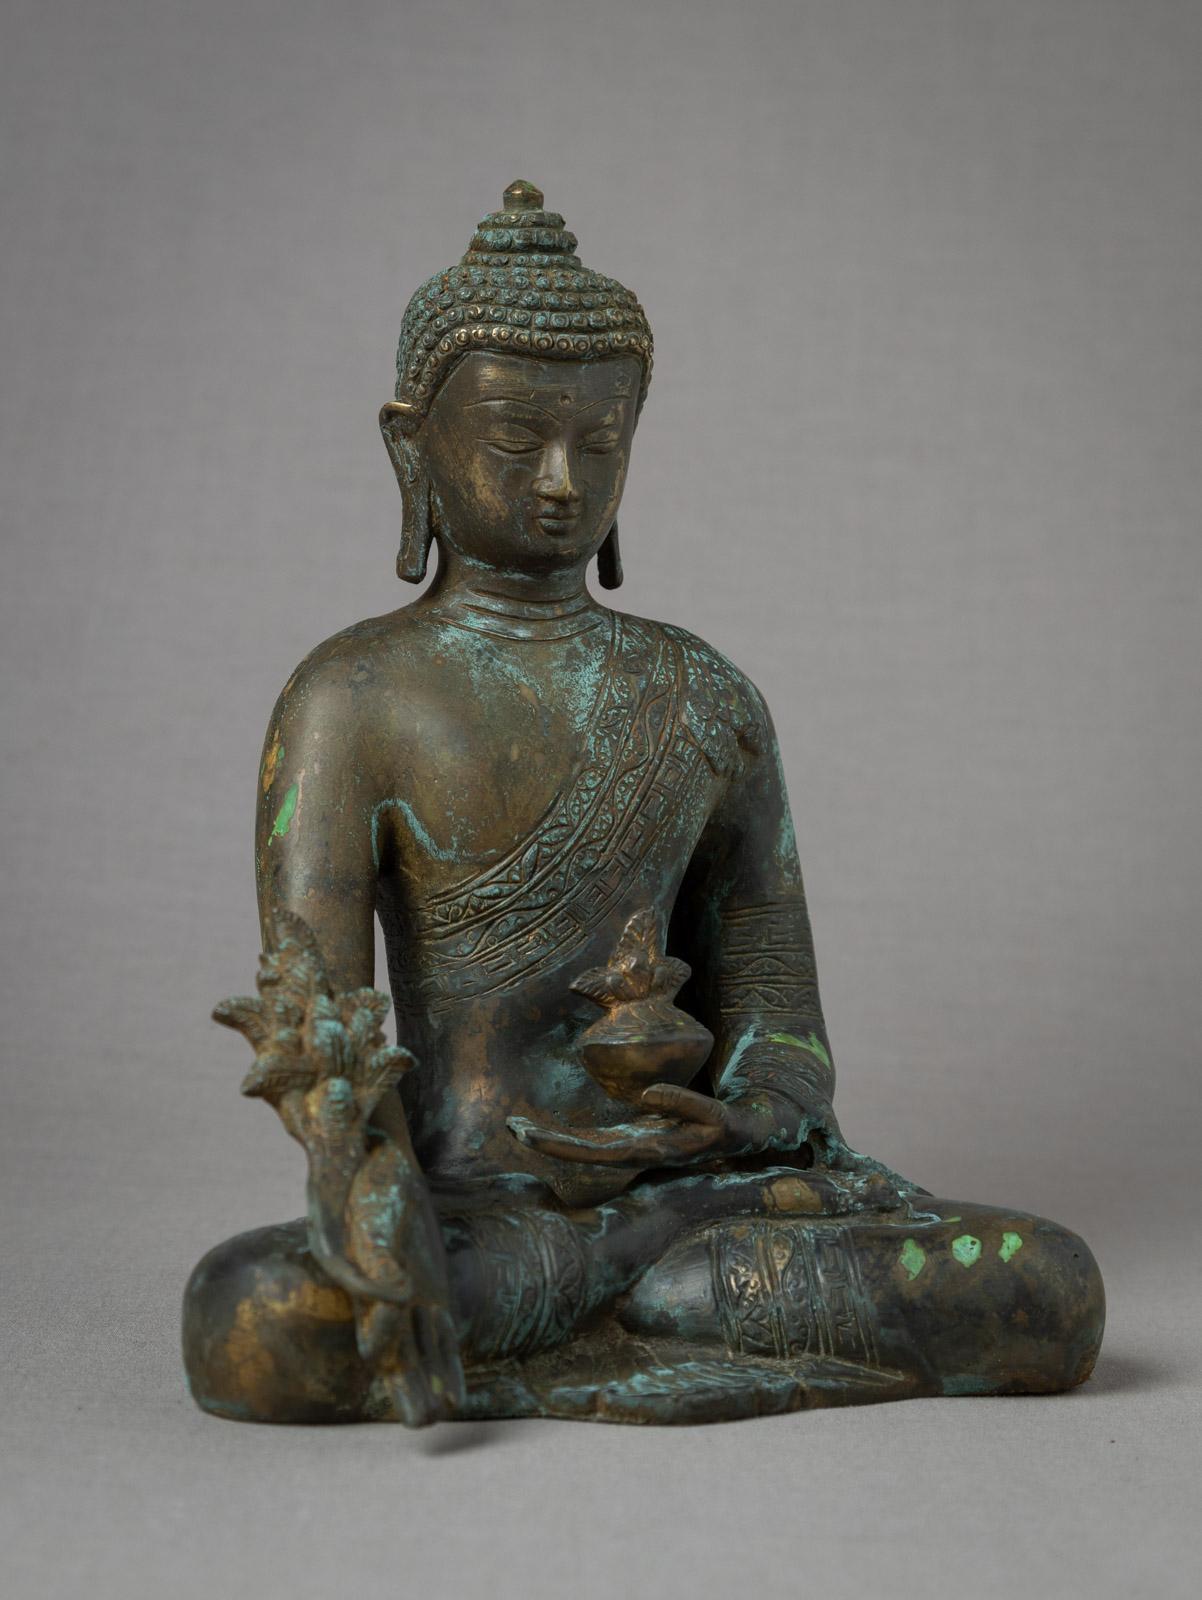 Contemporary Recently made Bronze Nepali Medicine Buddha from Nepal - OriginalBuddhas